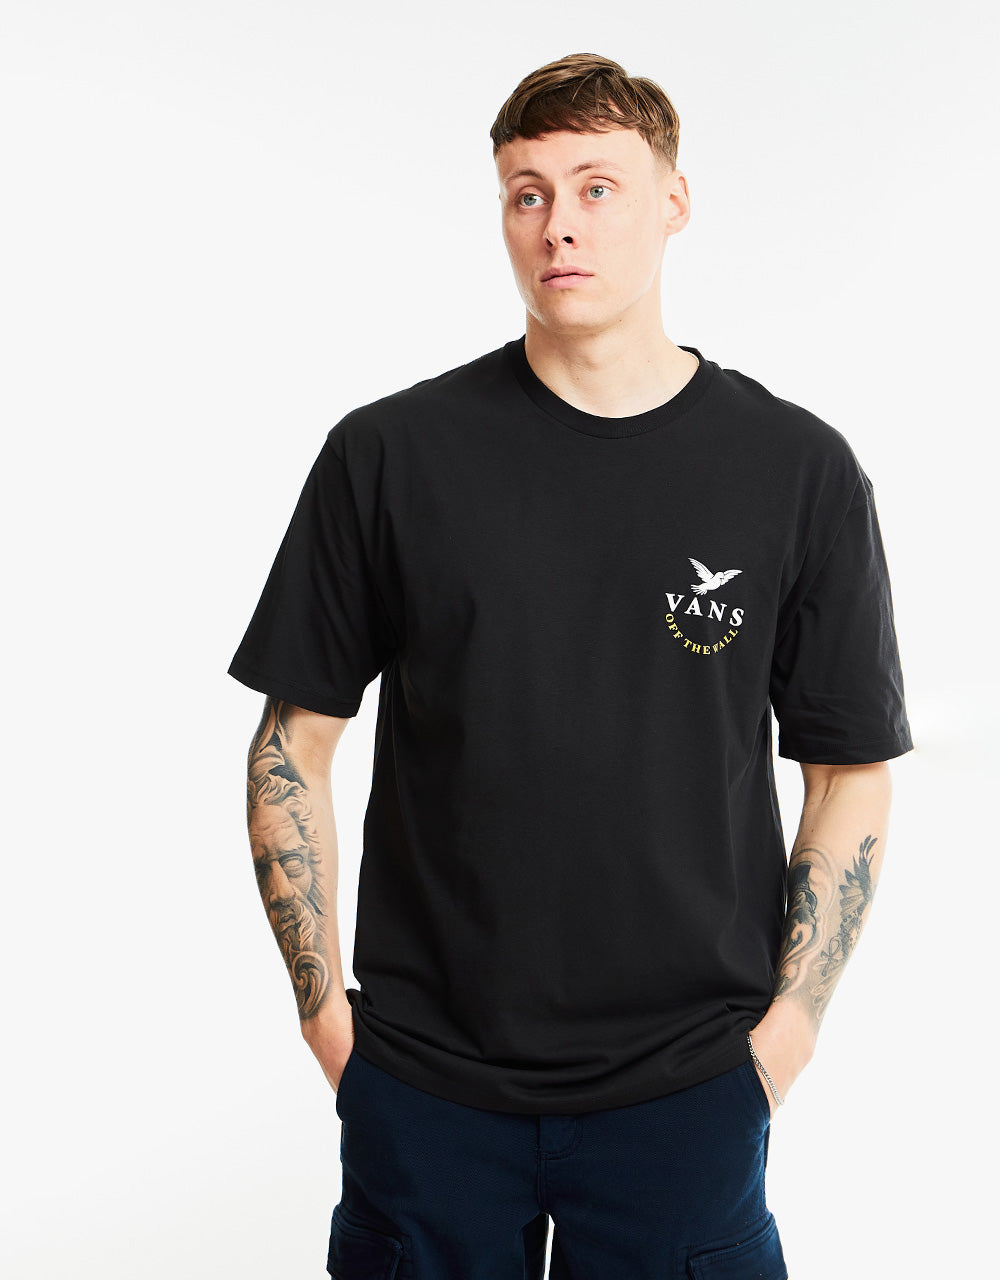 Vans Otherside T-Shirt - Black